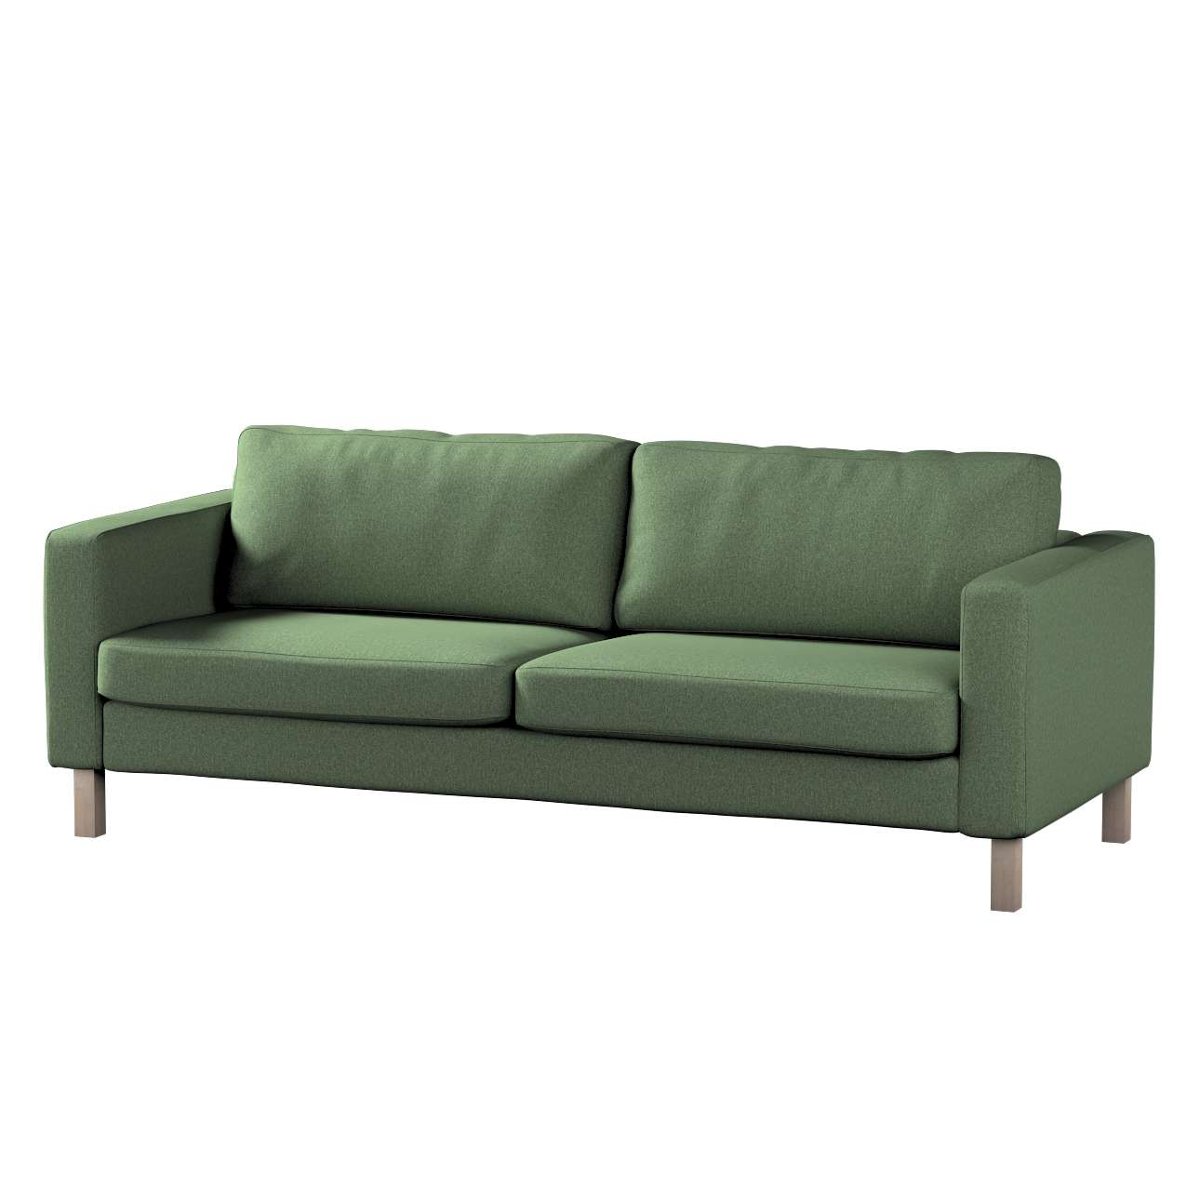 Dekoria pl pl Pokrowiec na sofę Karlstad rozkładaną zielony melanż 224 x 89 x 64 cm Amsterdam 1017-704-44